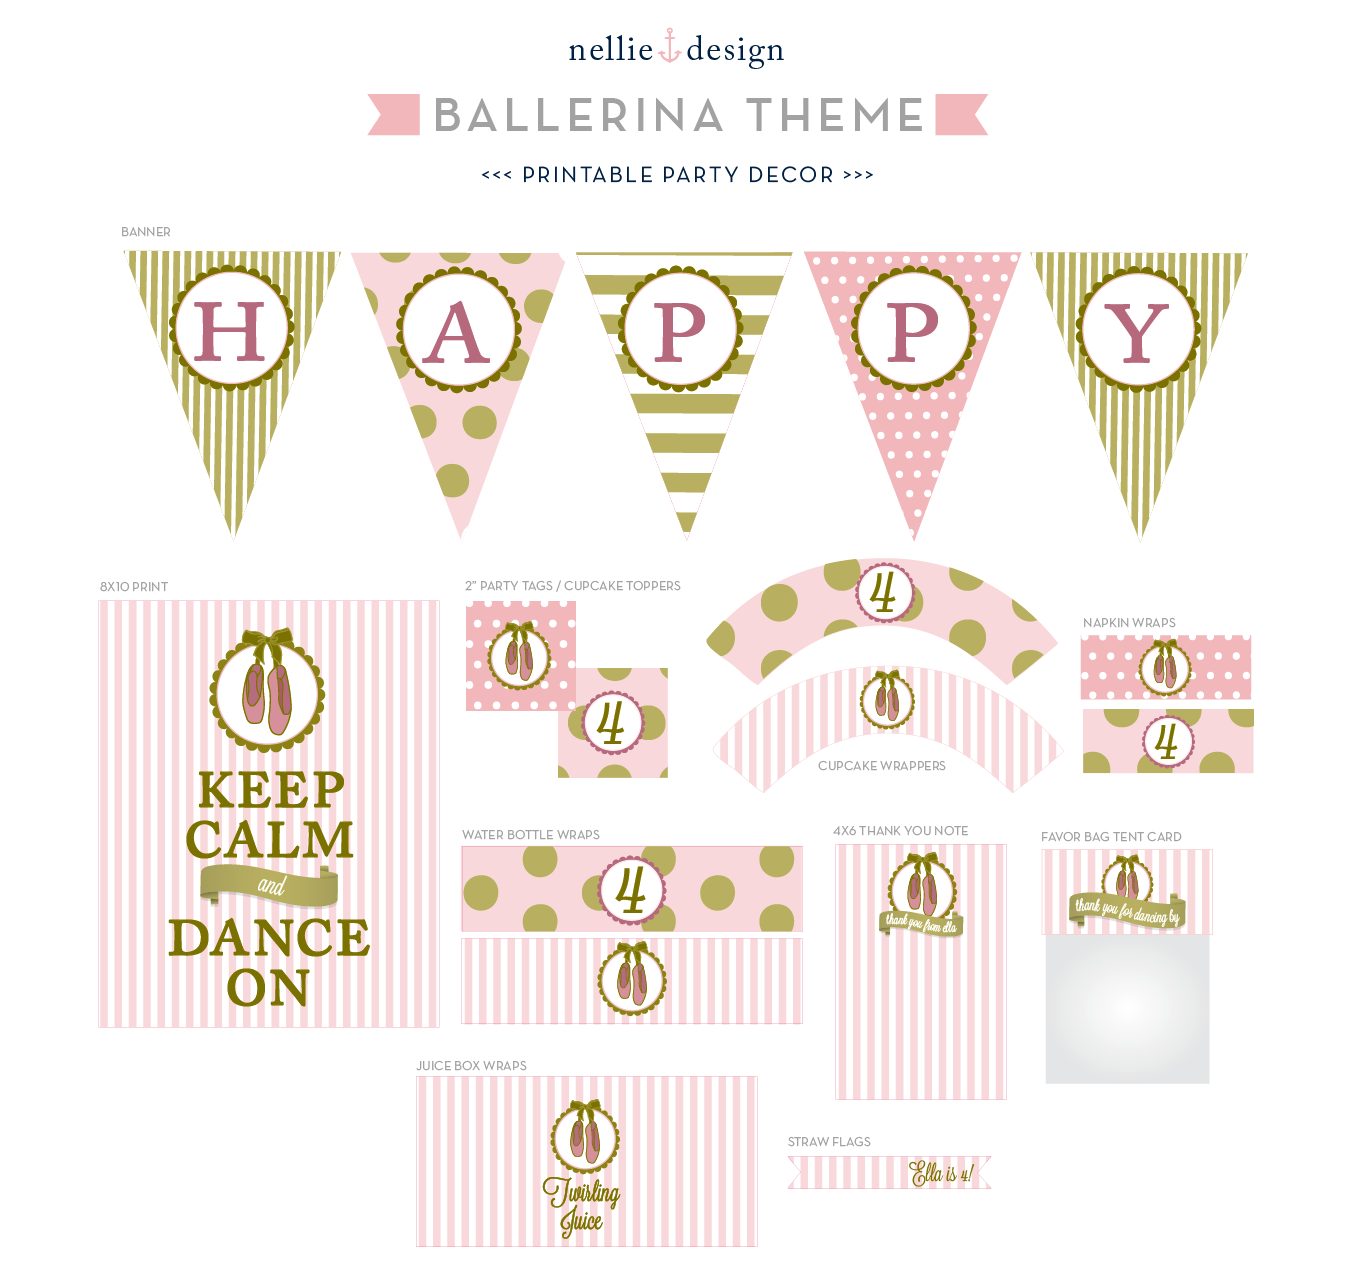 nellie-design-ballerina-birthday-party